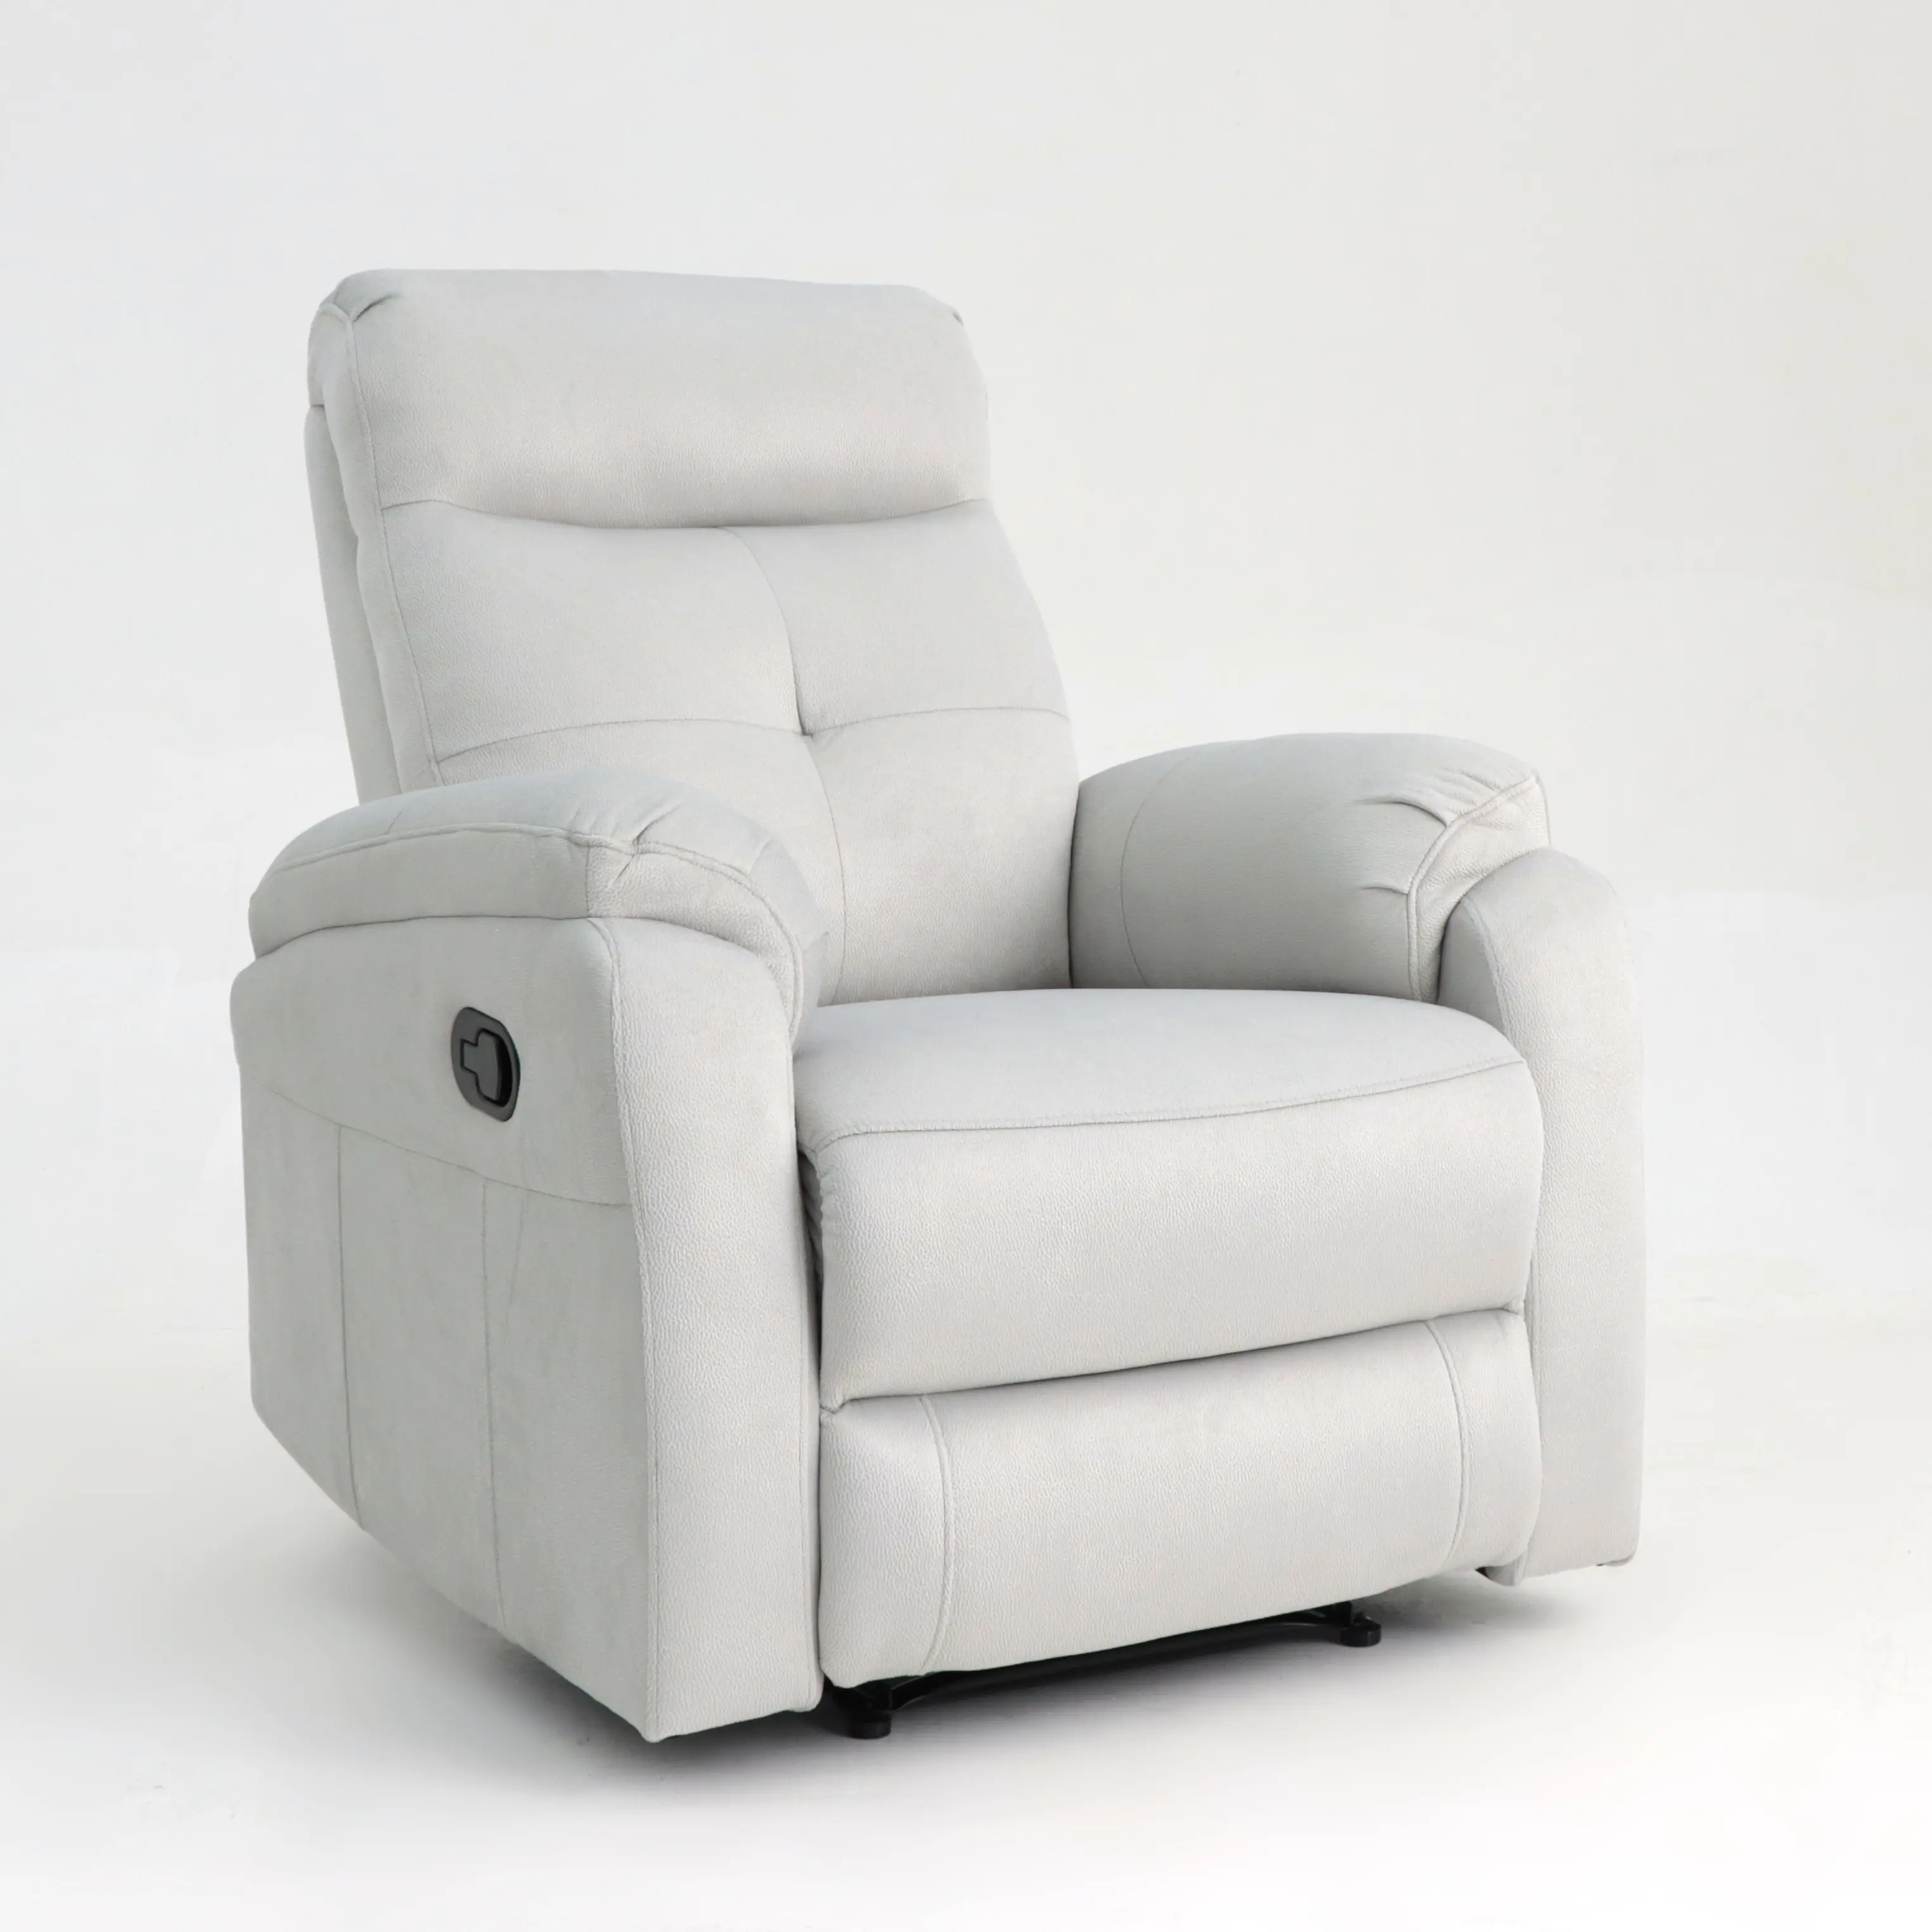 Geekmodern Modern kumaş manuel Recliner hareket kanepe kanepe oturma odası sandalye koltuk takımı